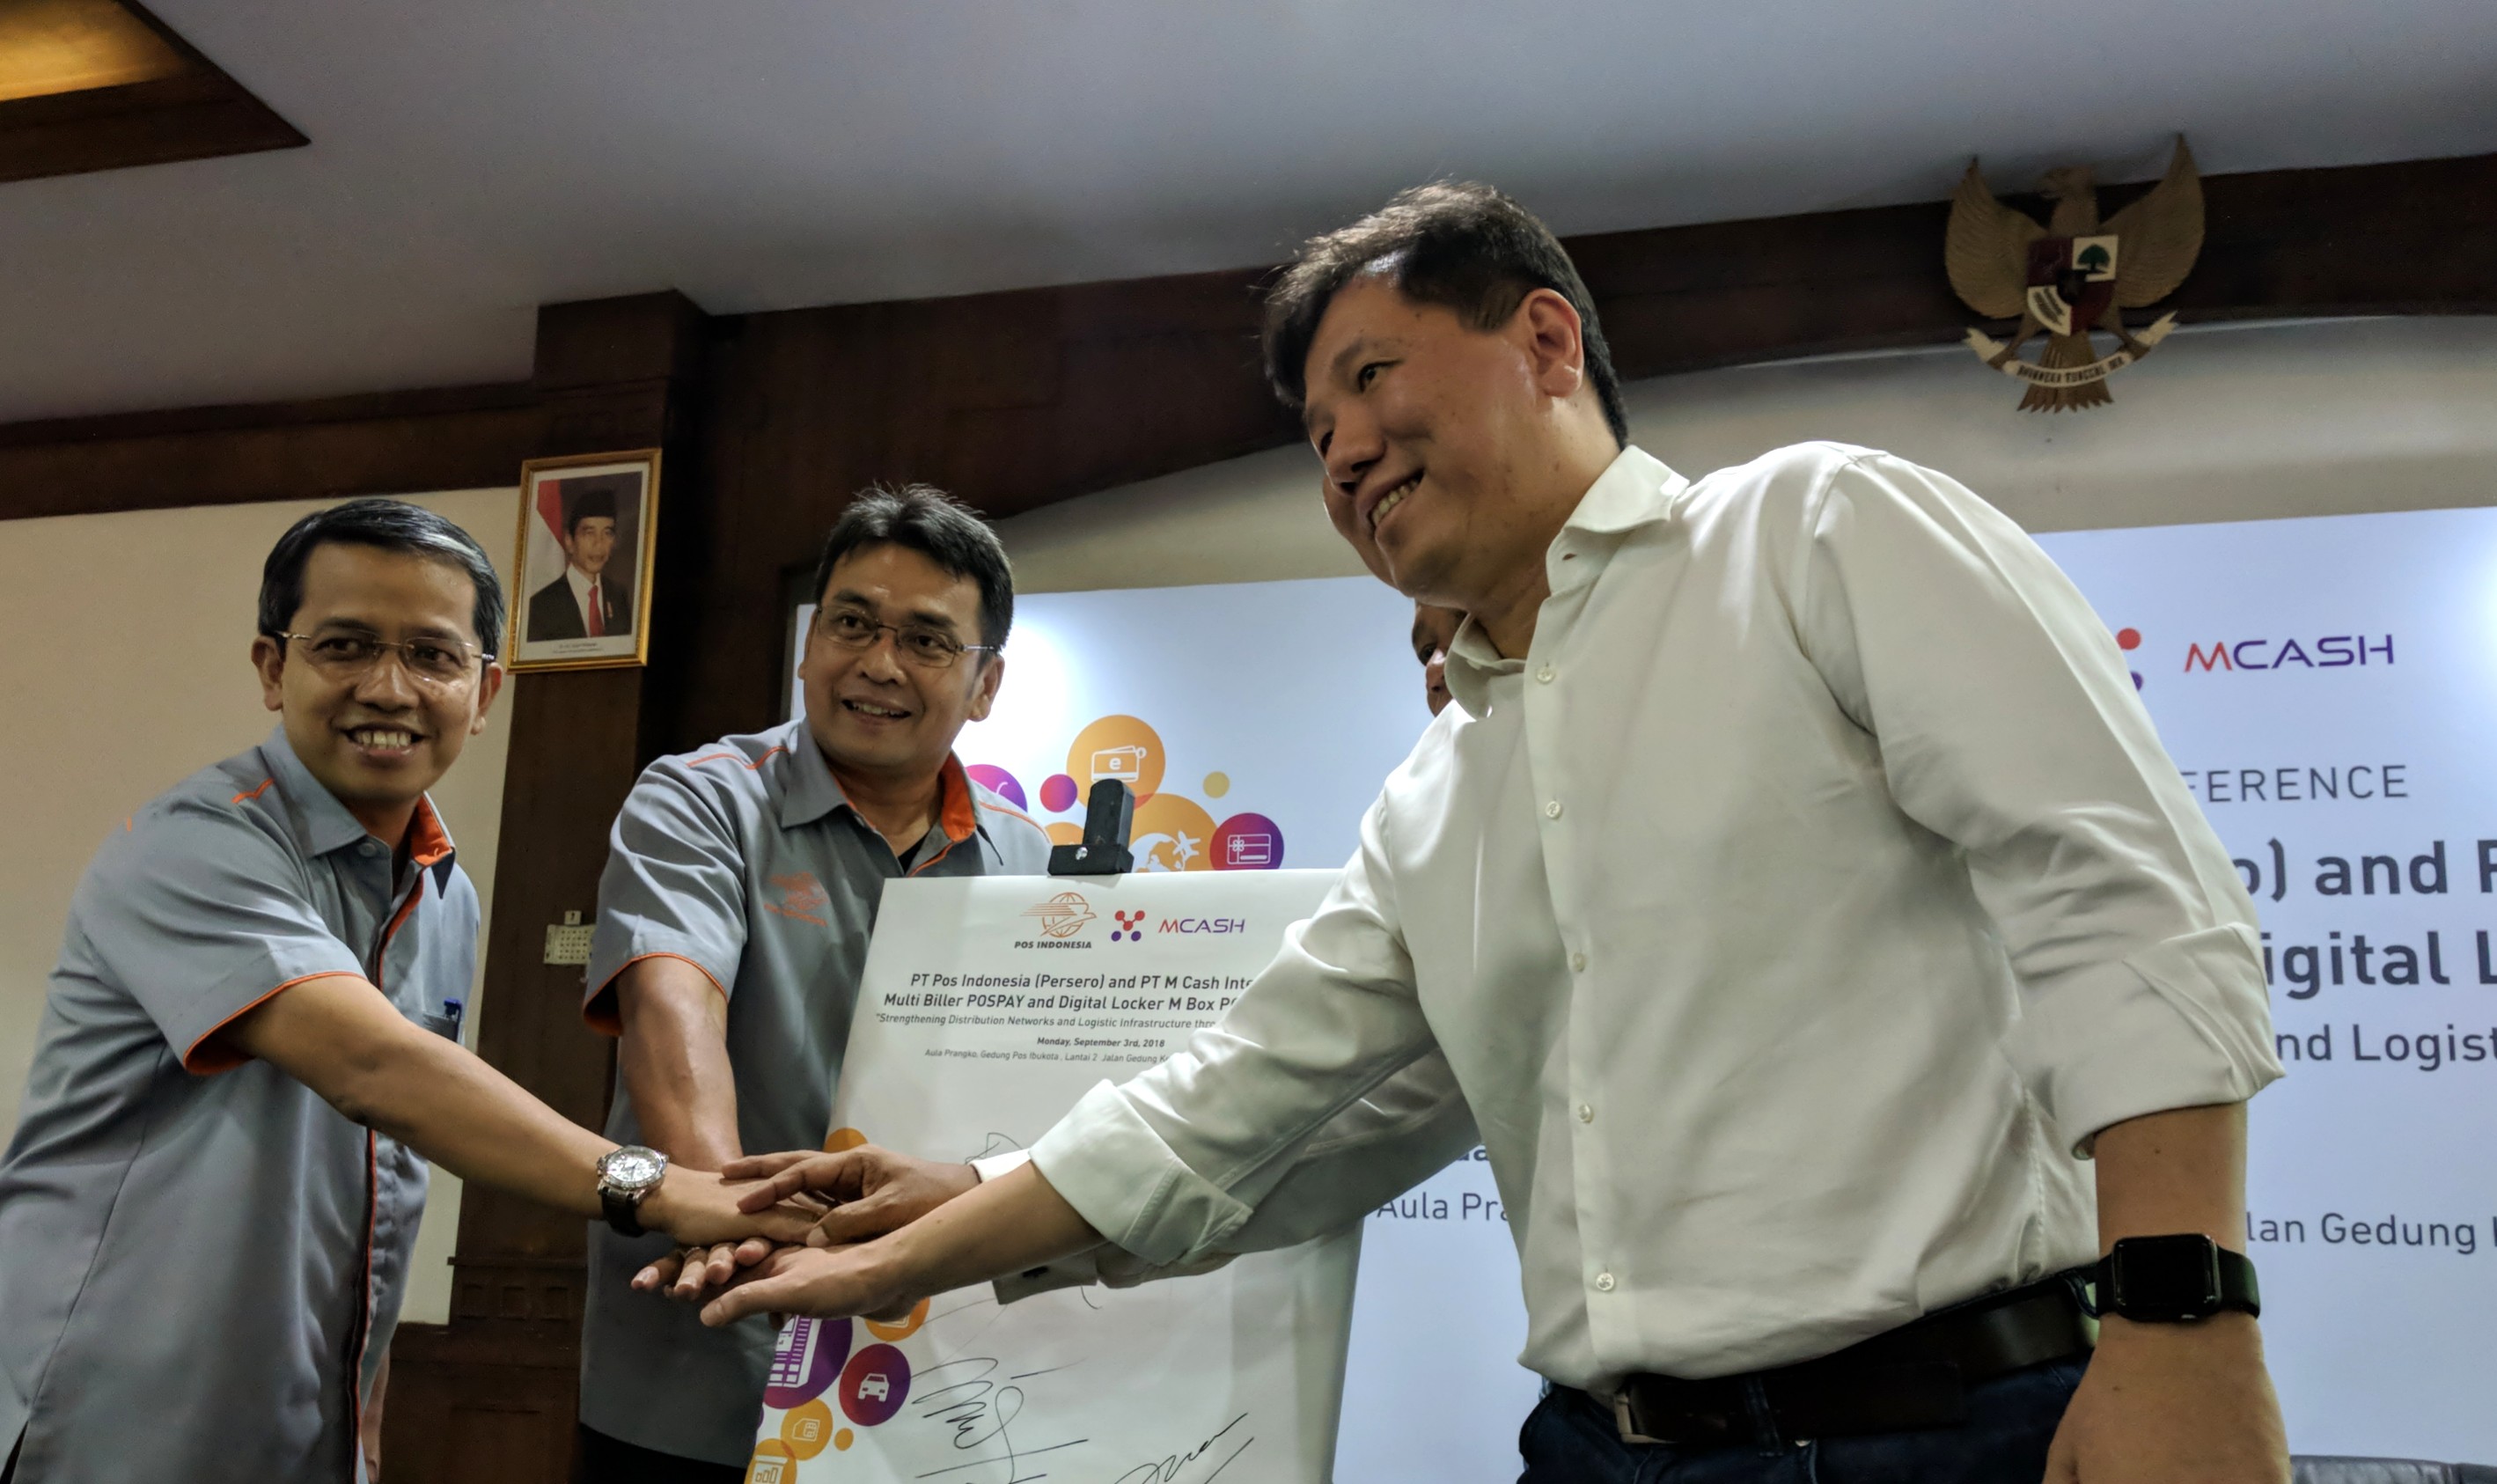 Kolaborasi antara Pos Indonesia dan MCASH untuk distribusi produk digital melalui Pospay dan layanan loker digital M Box Pos